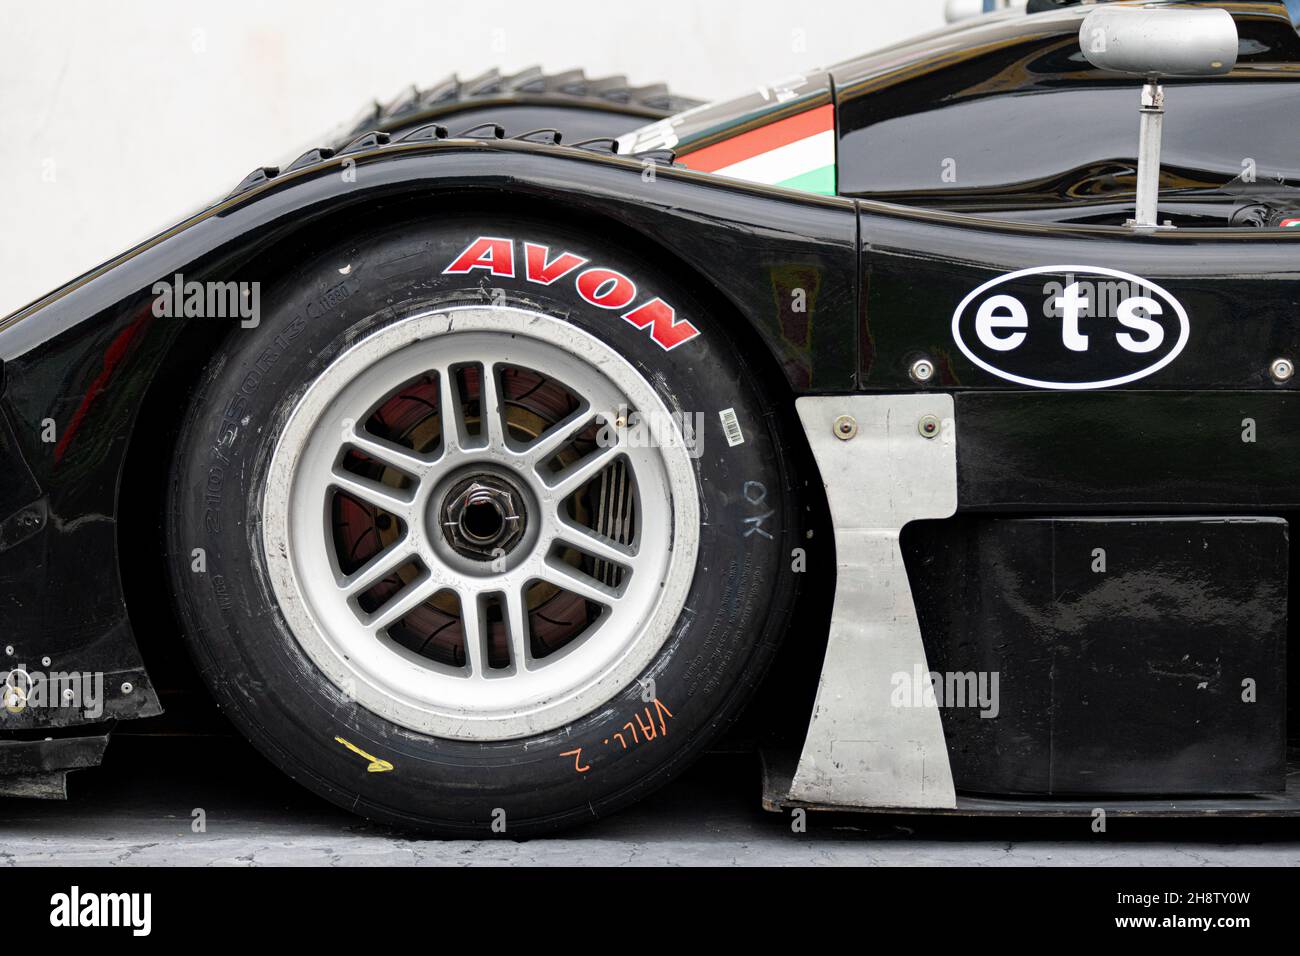 Vallelunga, Italia, 28 2021 de noviembre, fin de semana de carreras. Primer plano del neumático de carreras Avon para deportes de motor en un prototipo de coche Foto de stock